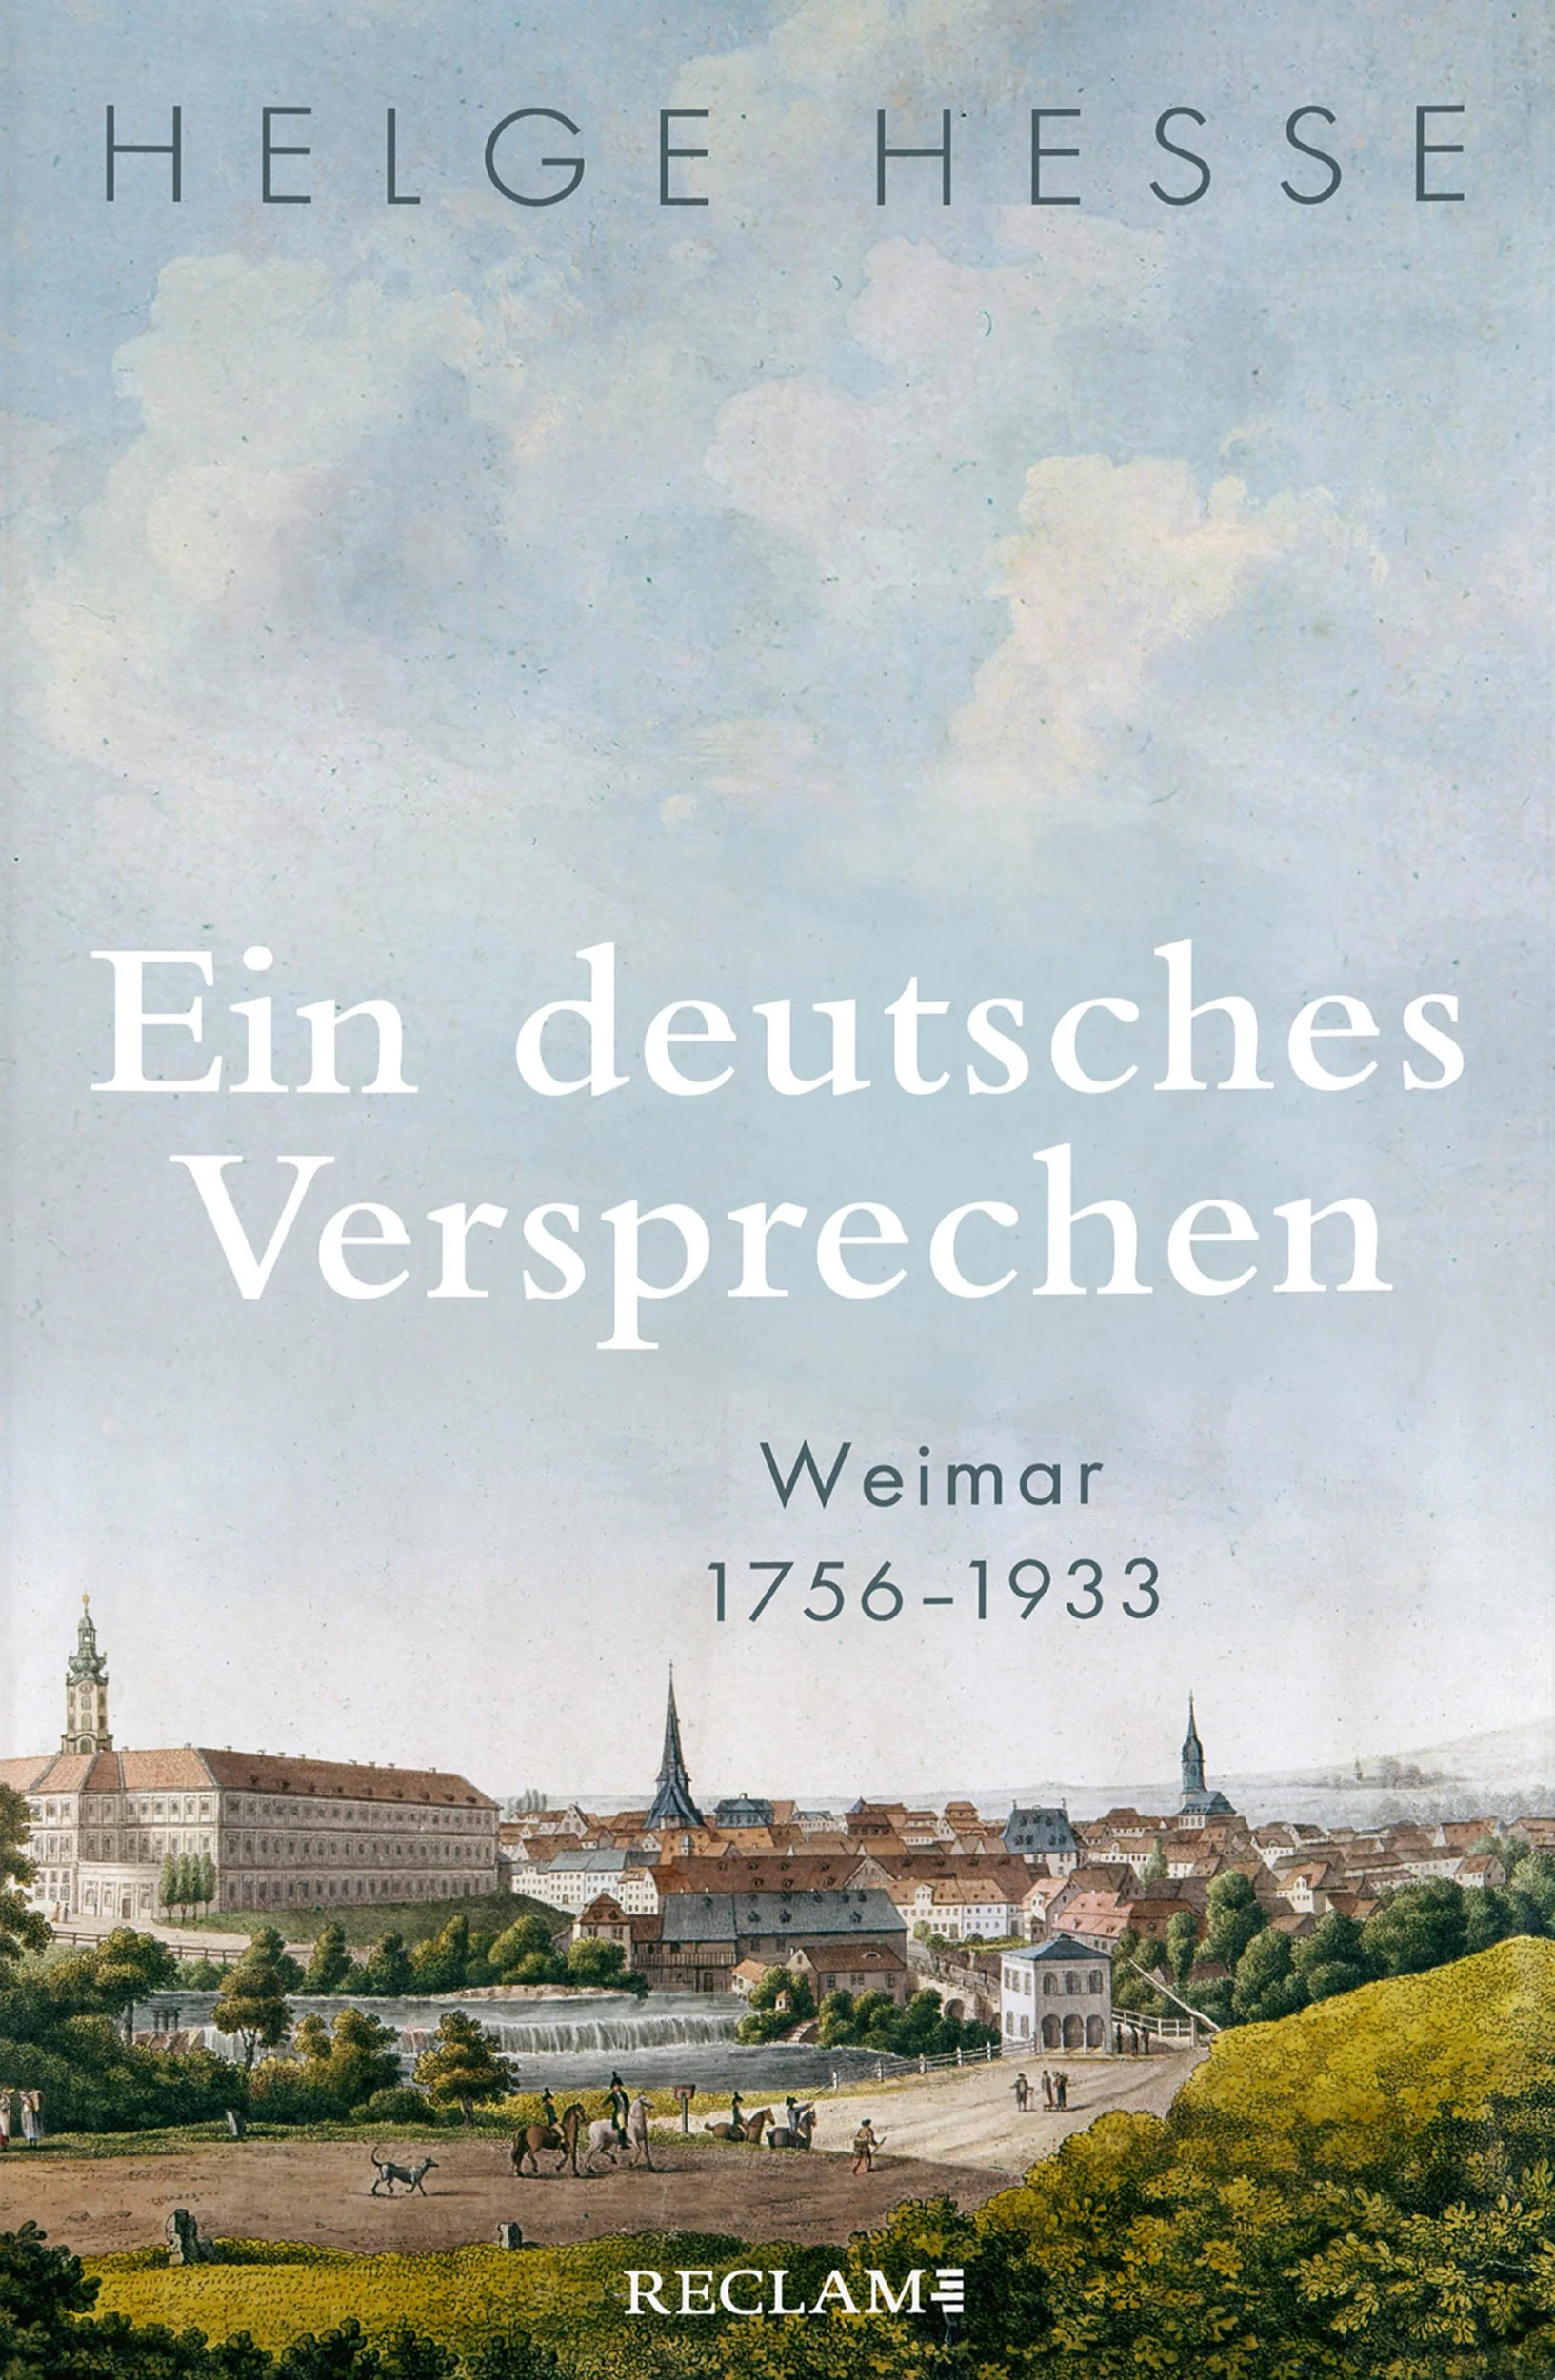 Weimar als Vorbild und Versprechen – ein neues Buch von Helge Hesse